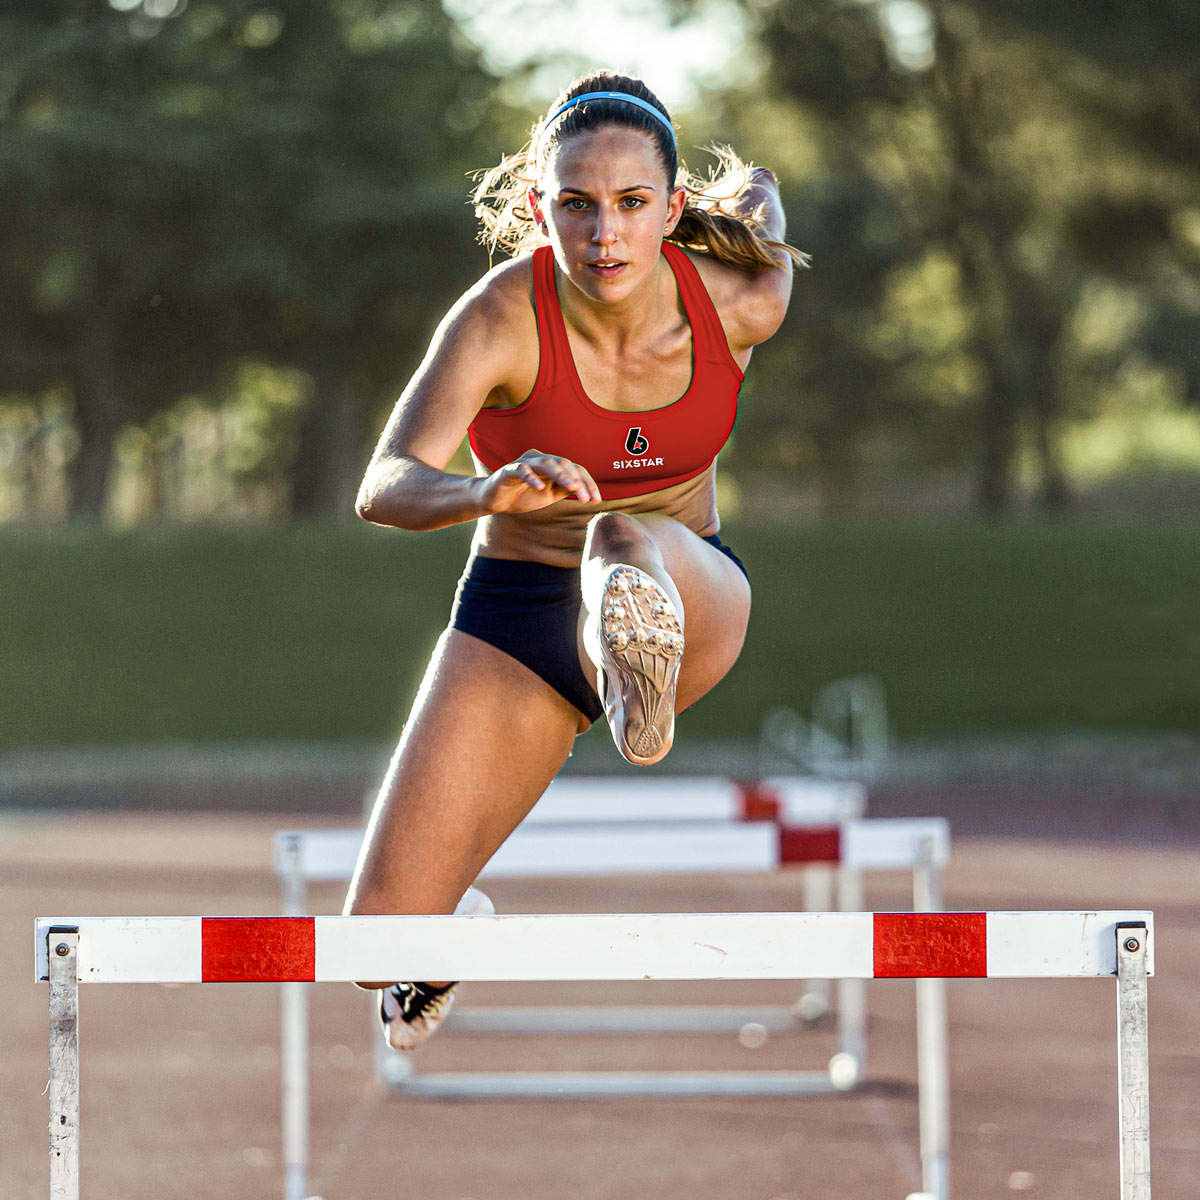 Athlete running hurdles